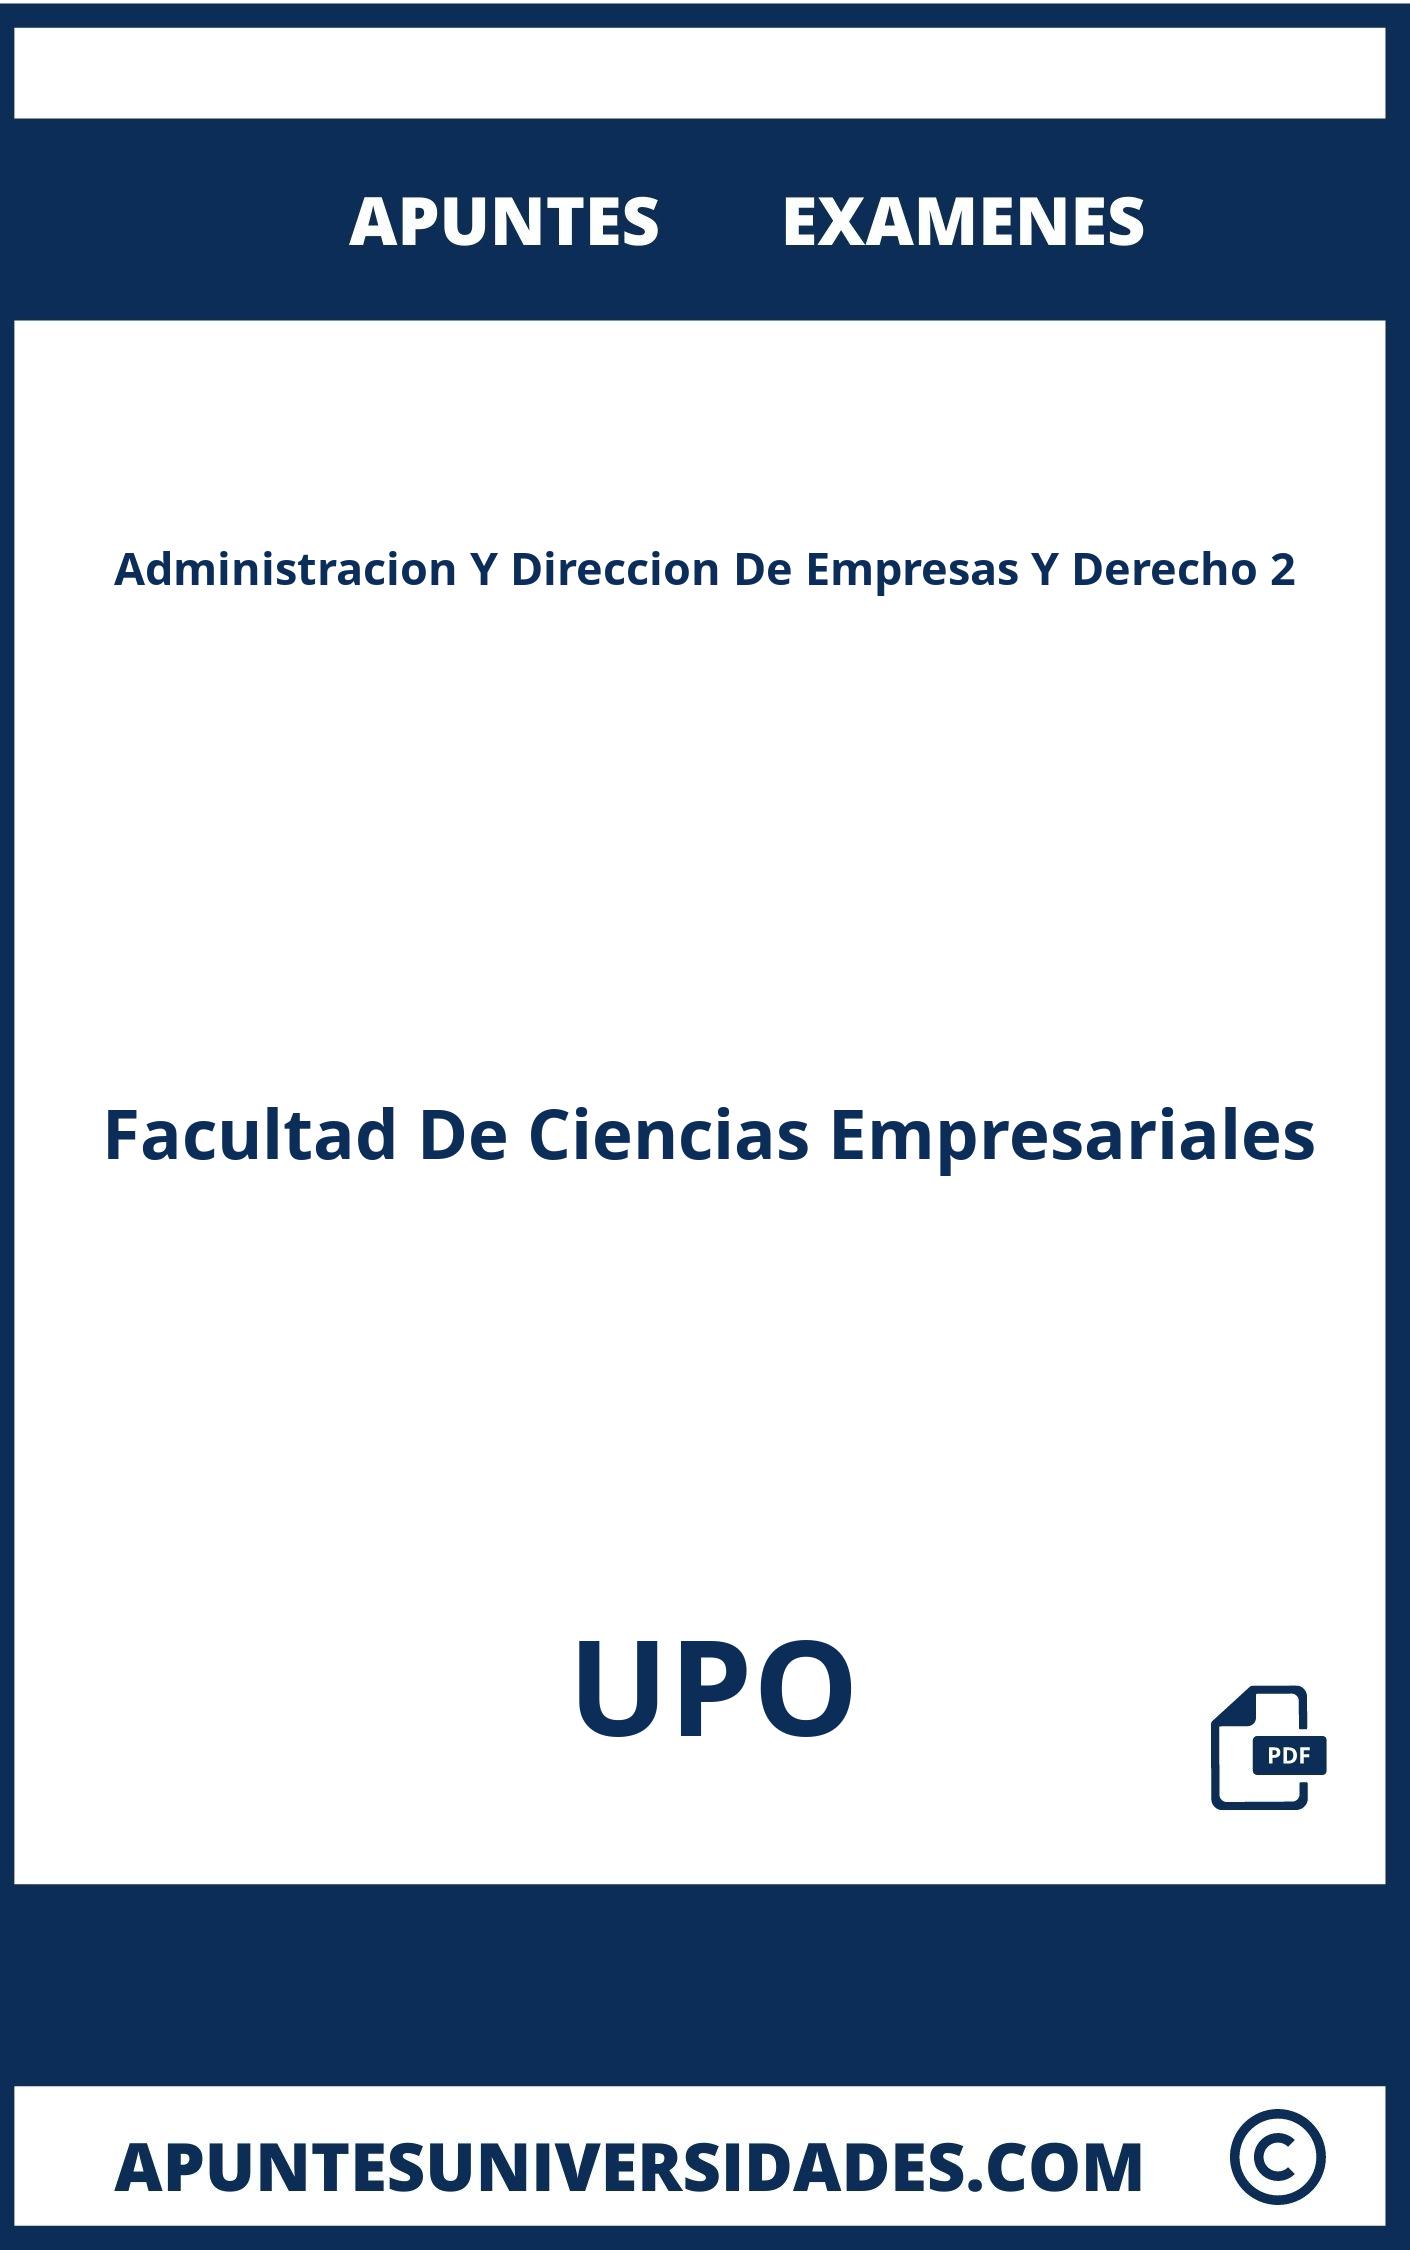 Apuntes y Examenes de Administracion Y Direccion De Empresas Y Derecho 2 UPO